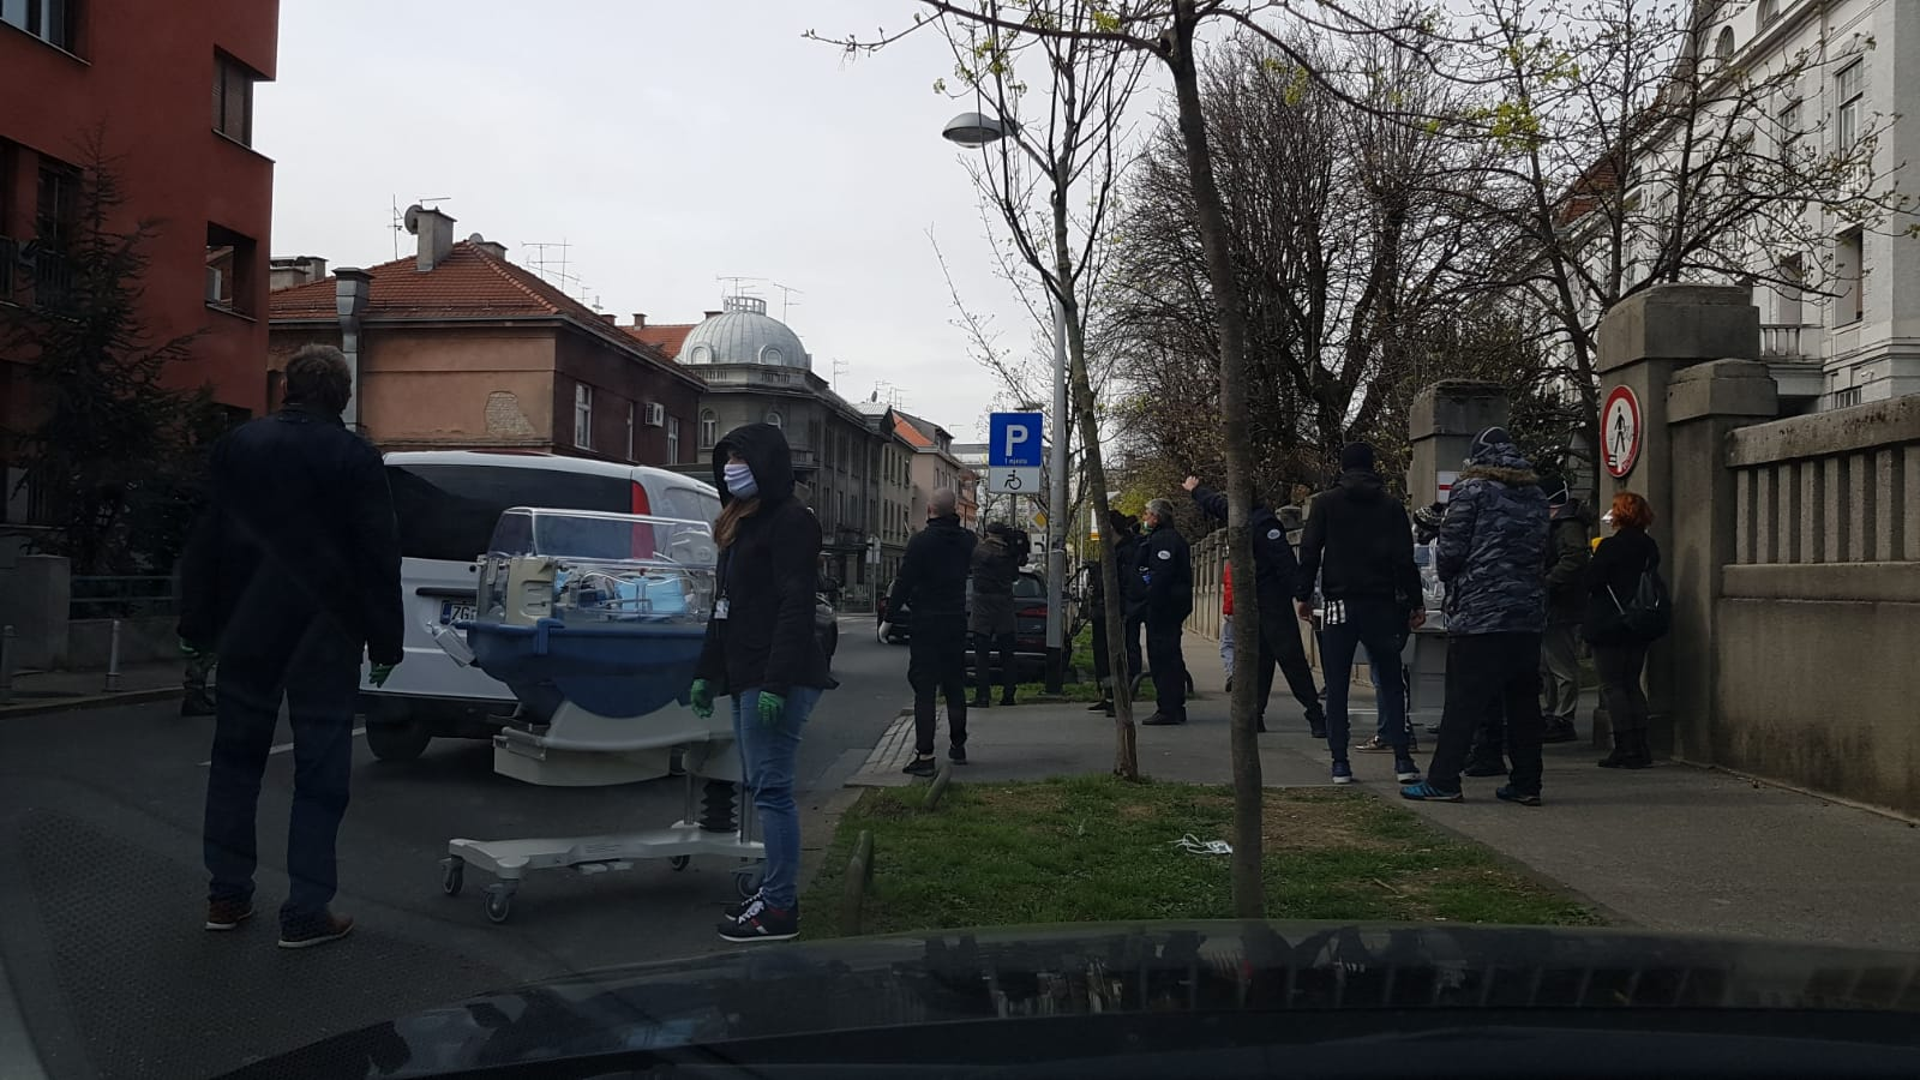 Dinamovi navijači među prvima su priskočili u pomoć Zagrepčanima nakon snažnog potresa koji je jutros pogodio glavni grad Hrvatske